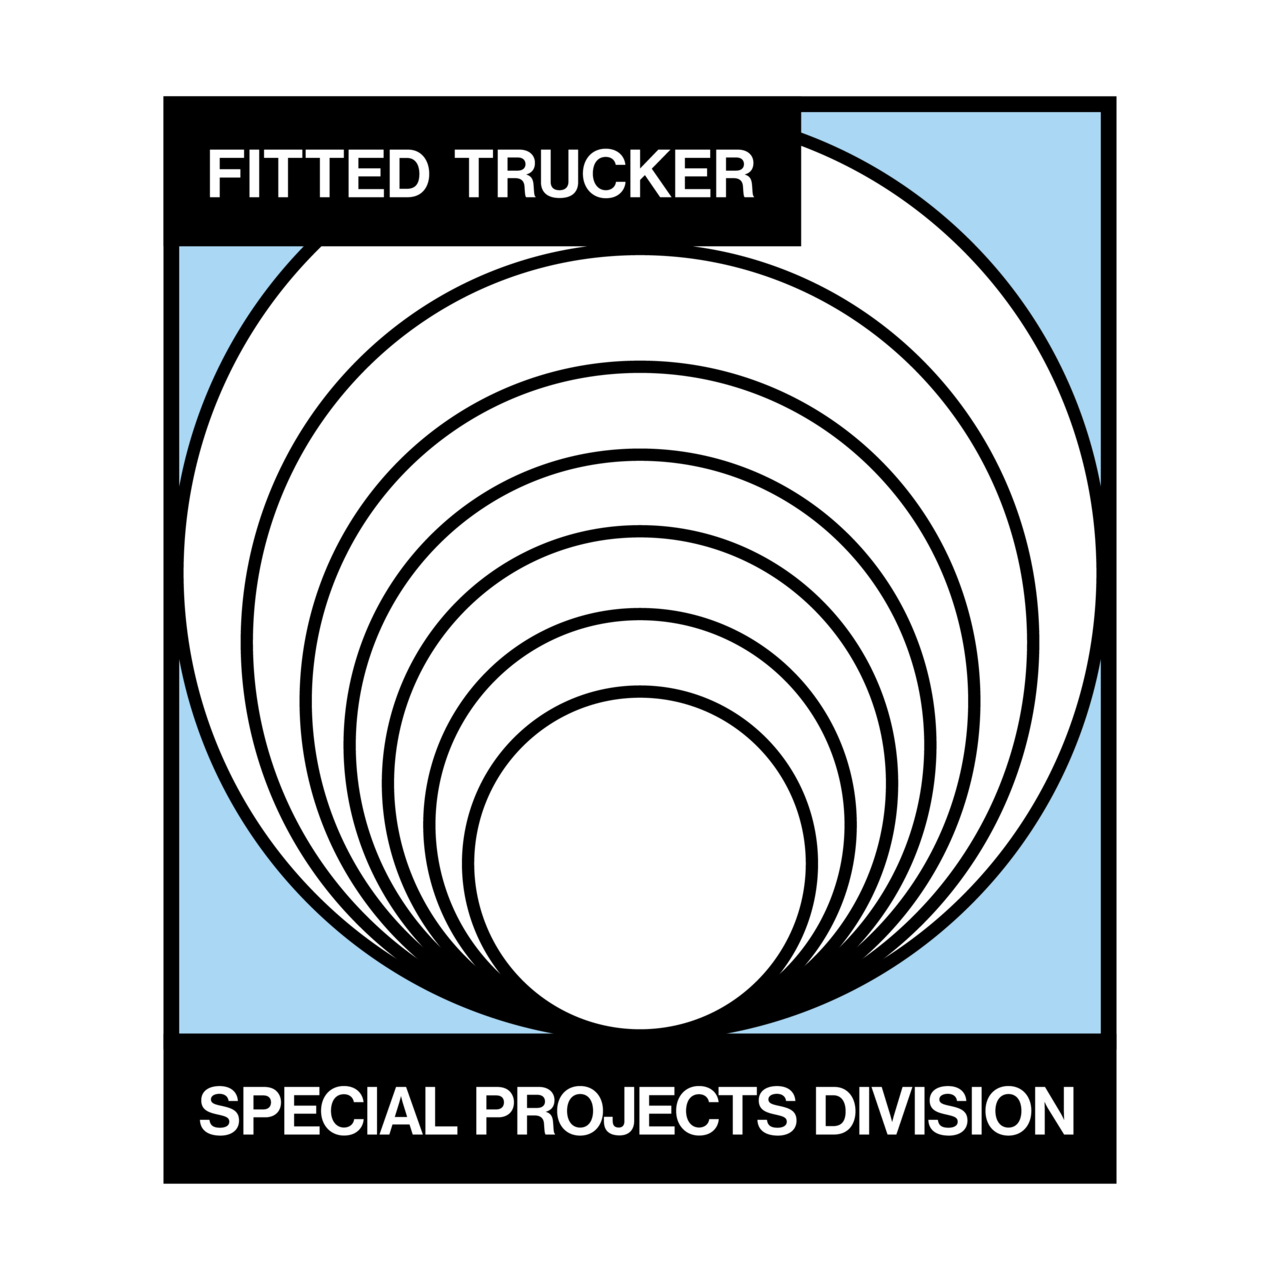 Artwork for Fitted Trucker